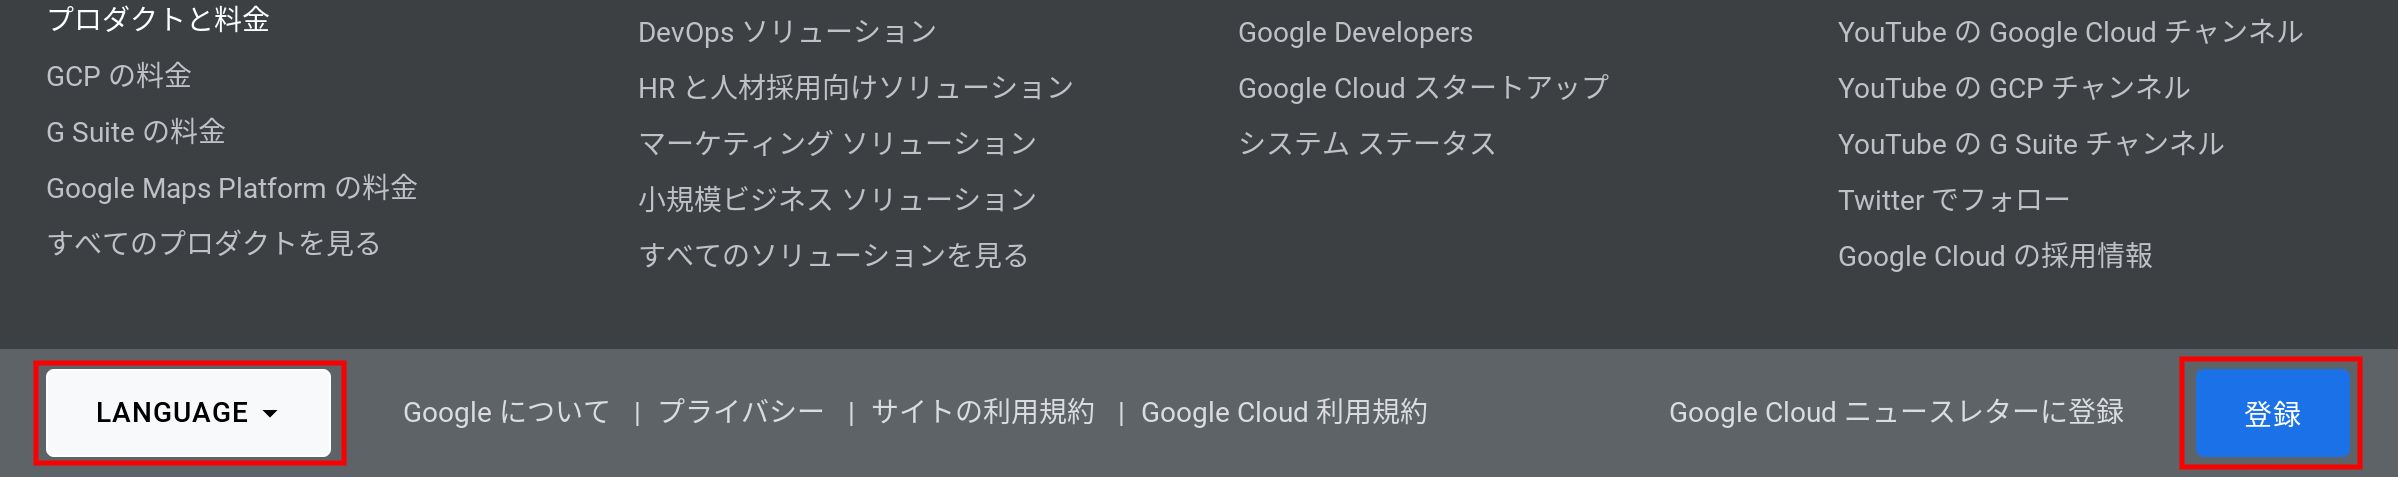 Google Cloud 公式のフッターにあるGoogle Cloud ニュースレターの登録ボタン